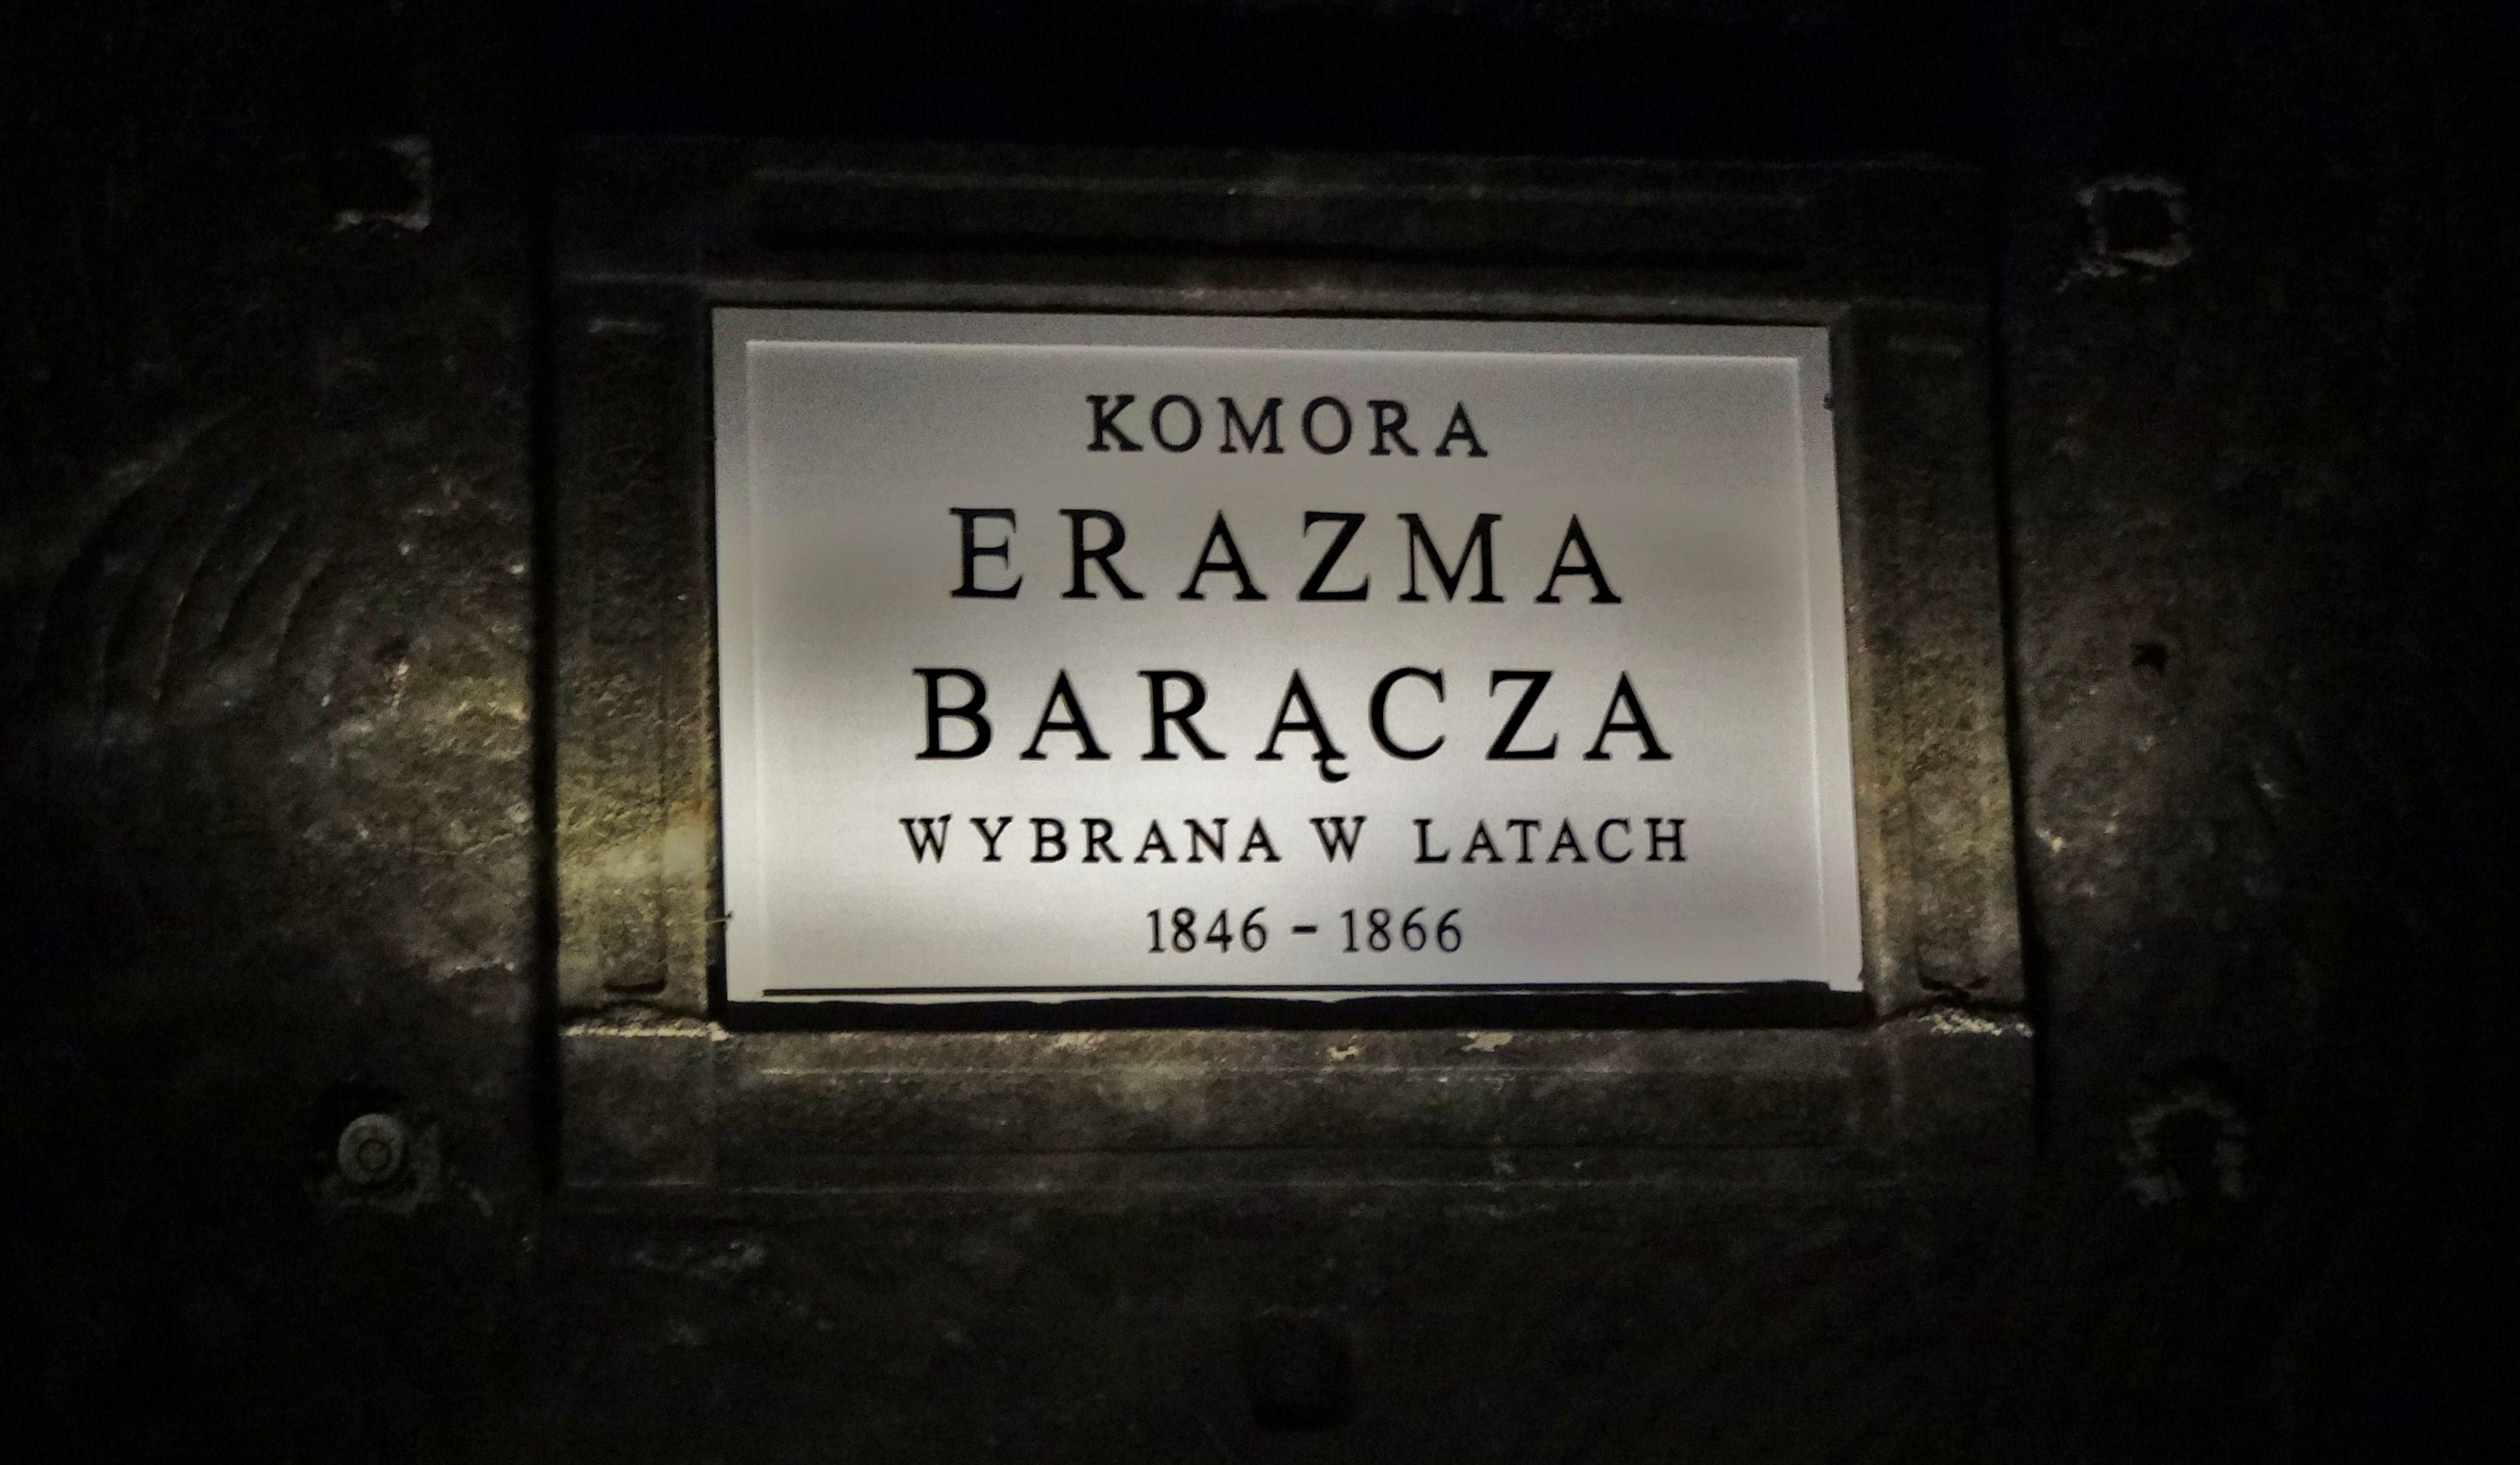 Foto: Komora Erazma Barącza - Wieliczka (Lesser Poland Voivodeship), Polonia